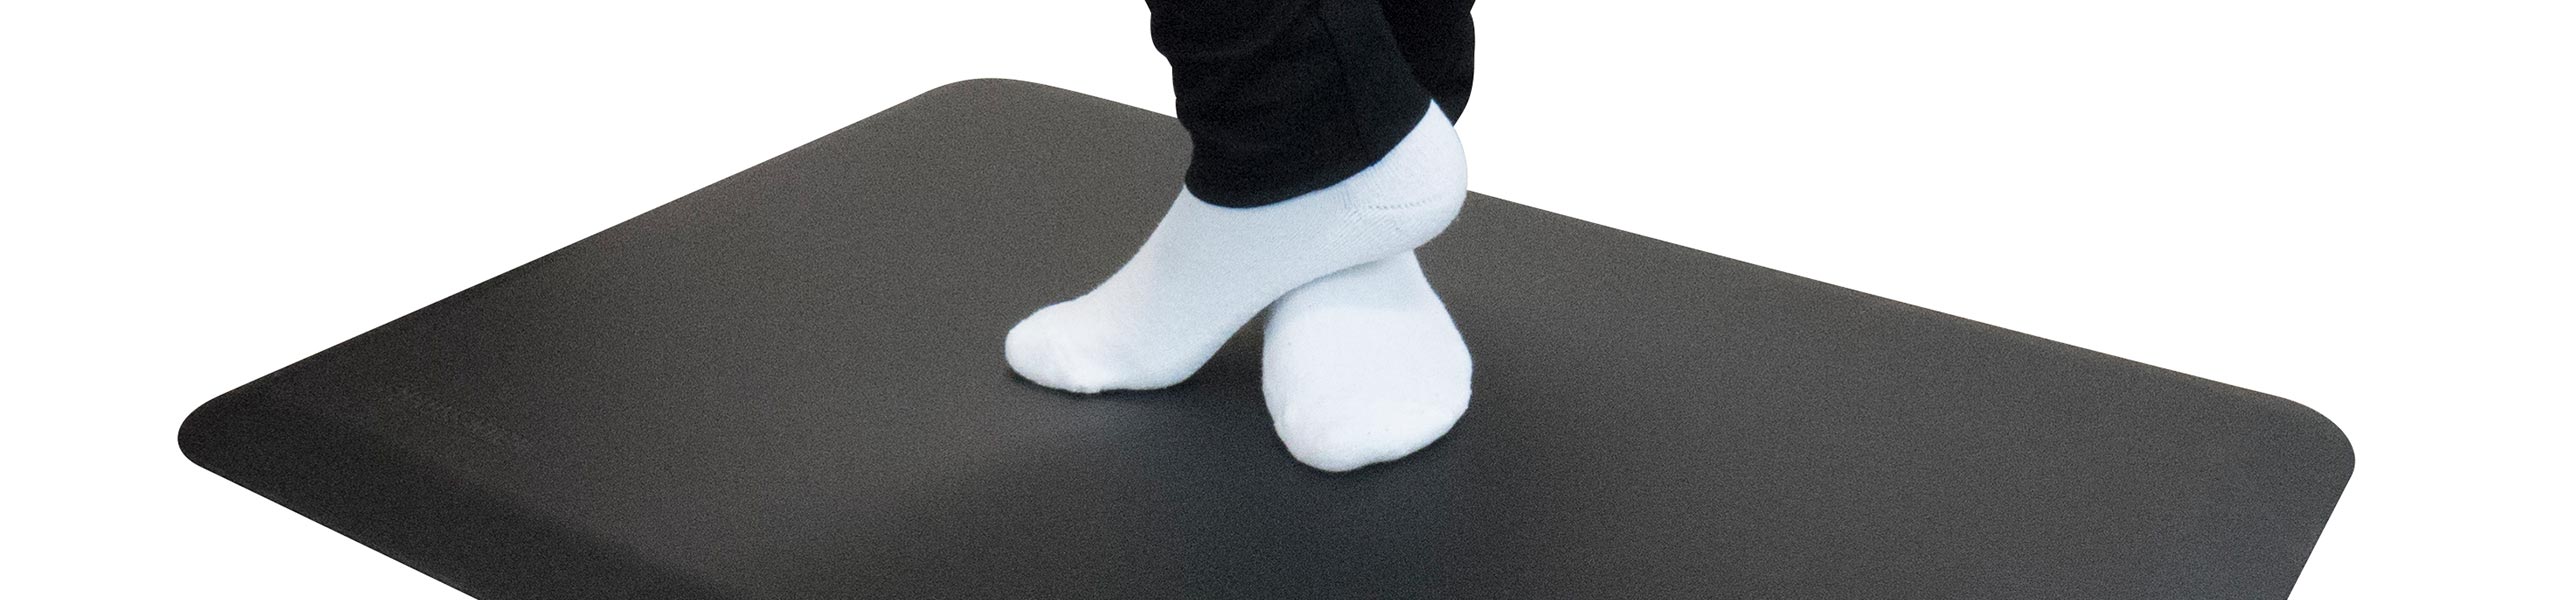 Feet on an EcoLast Premium Standing Mat